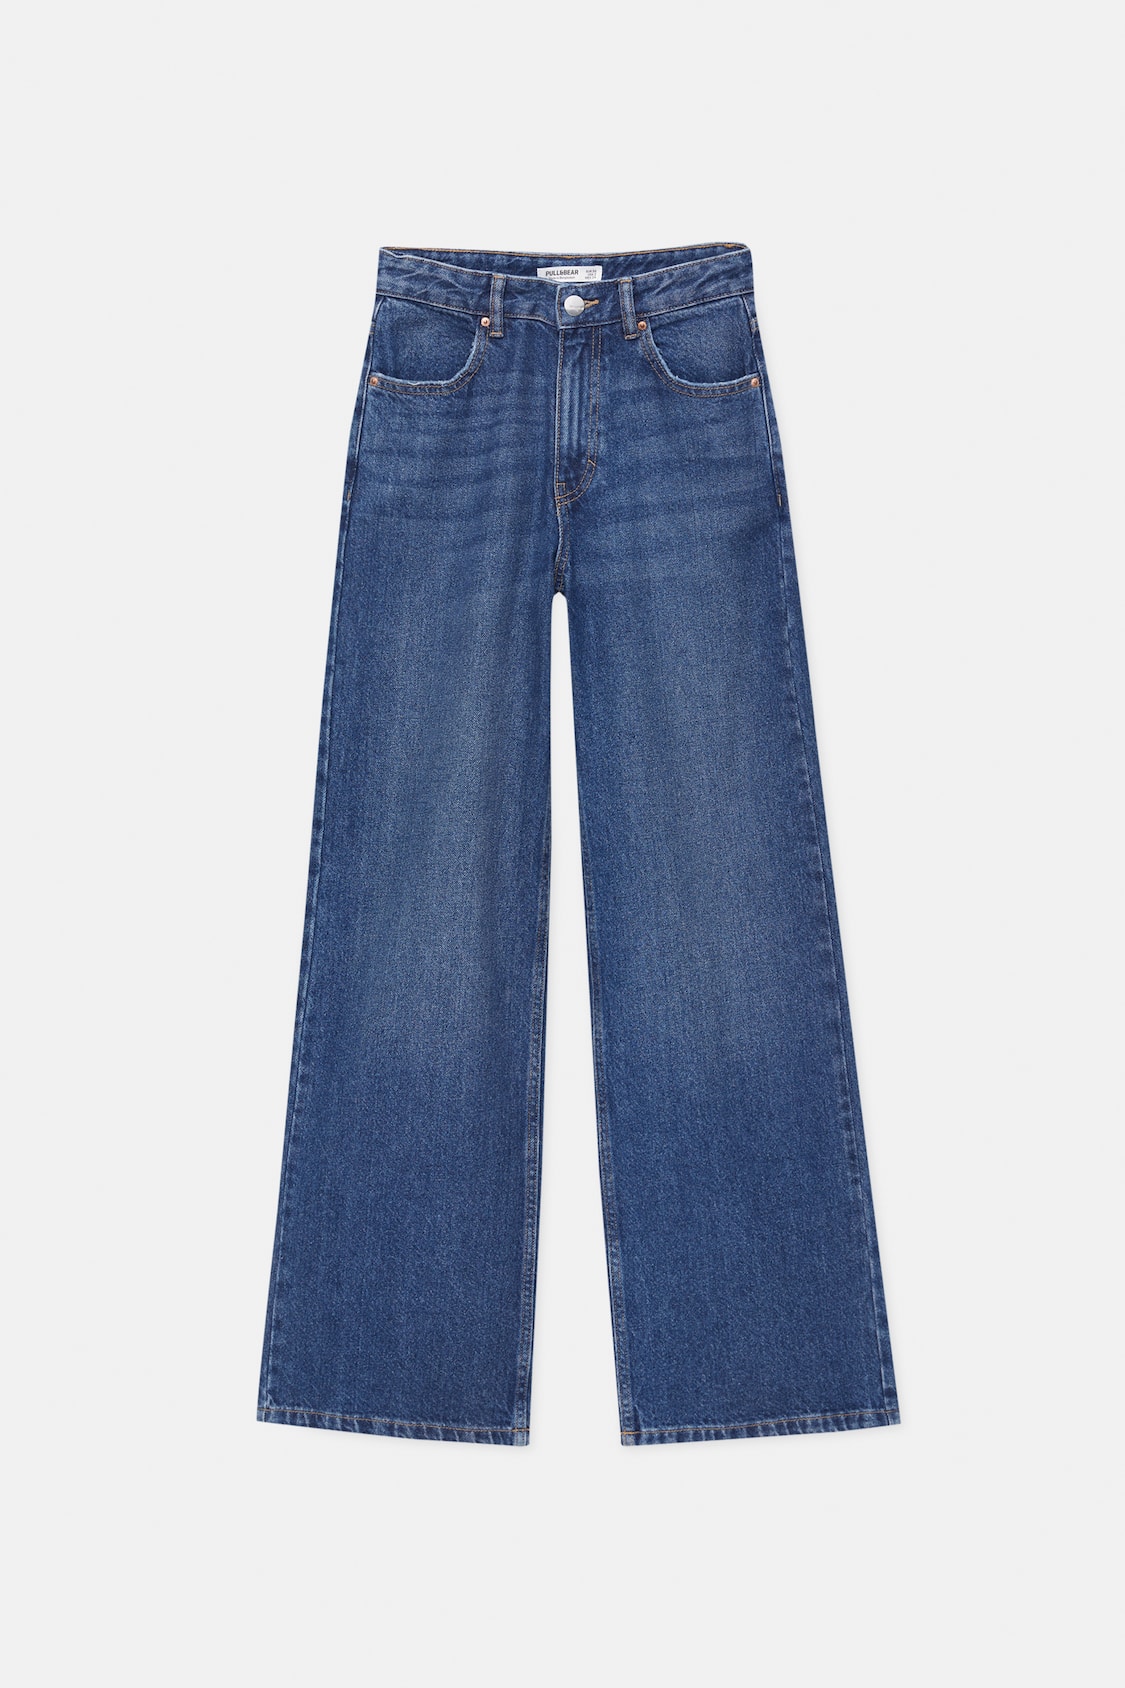 شلوار جینز 20416 سایز 34 تا 44 کد3 مارک Camaieu